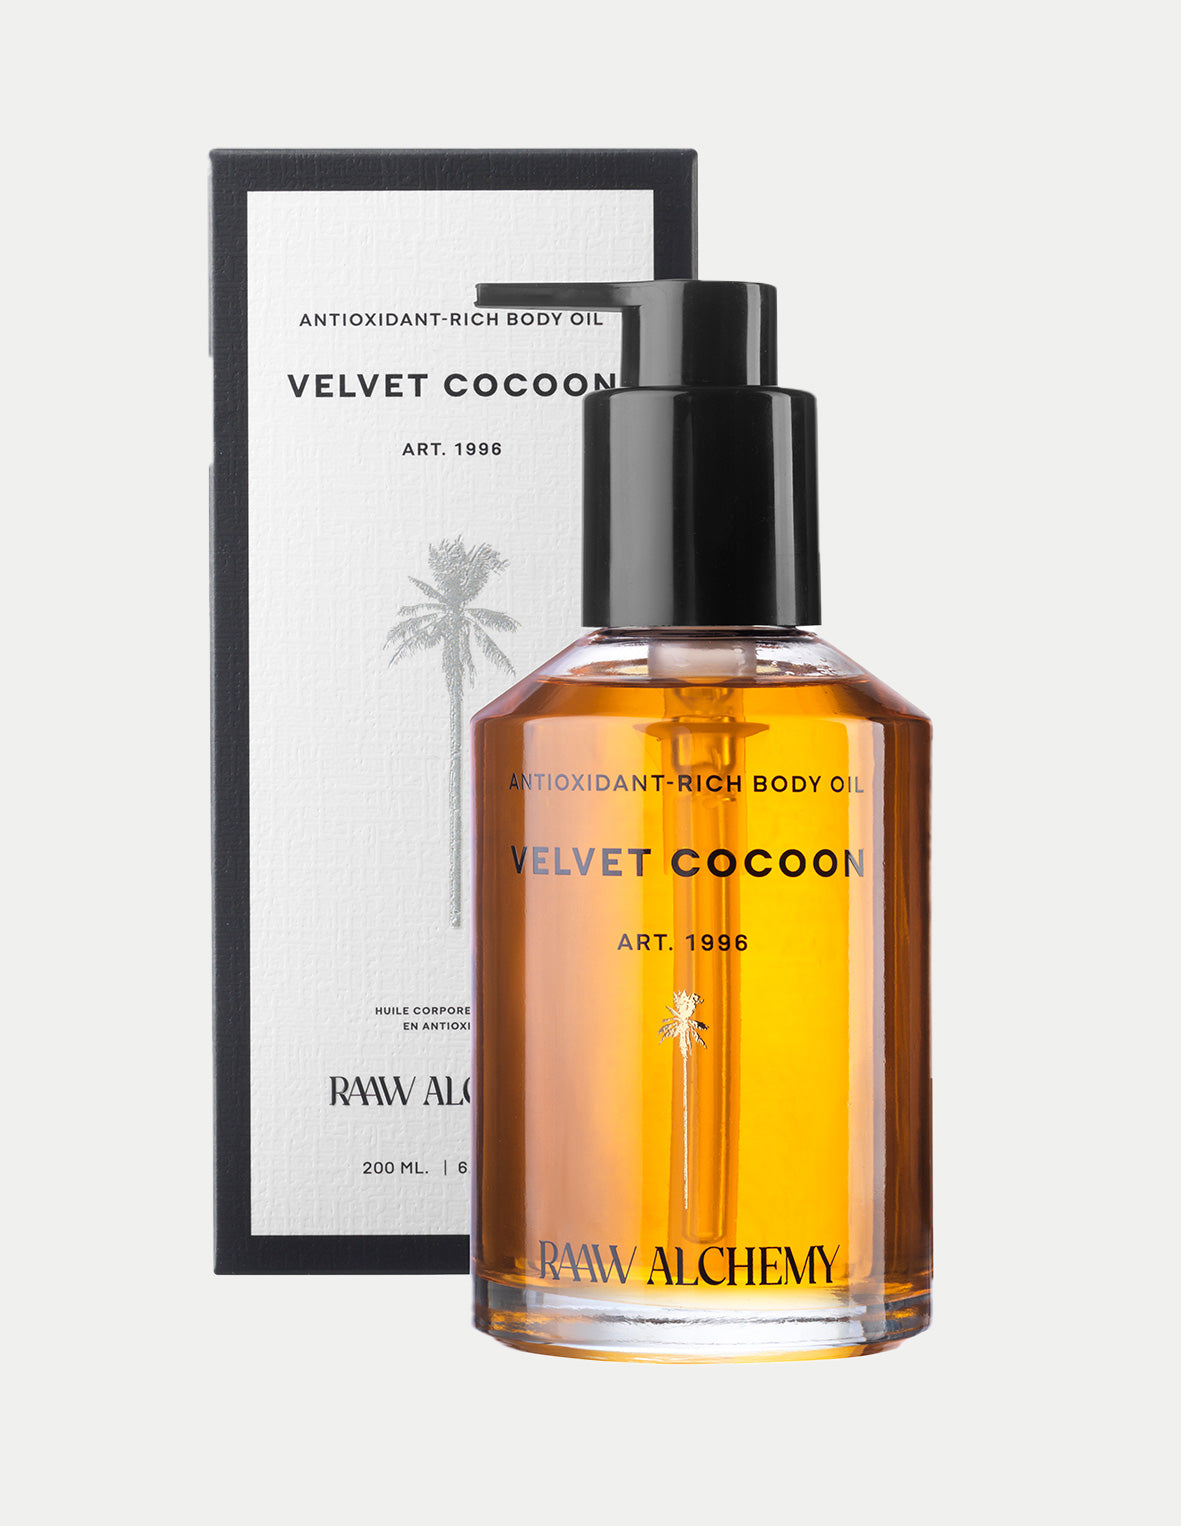 Velvet Cocoon Body Oil